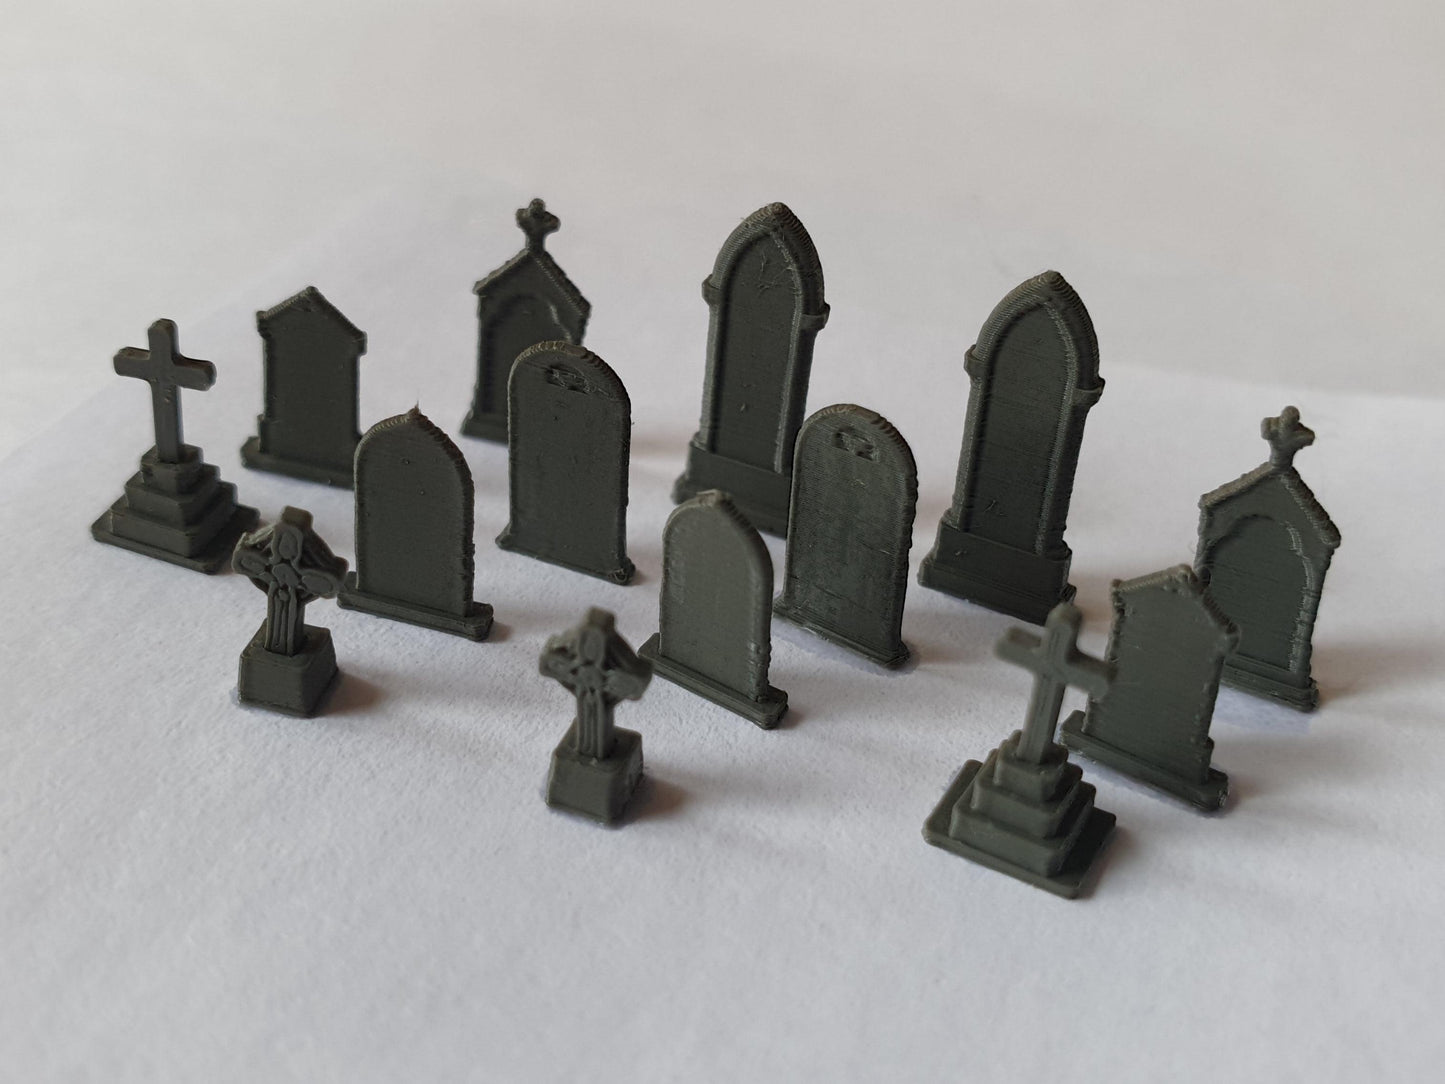 N scale models of old gravestones - Three Peaks Models